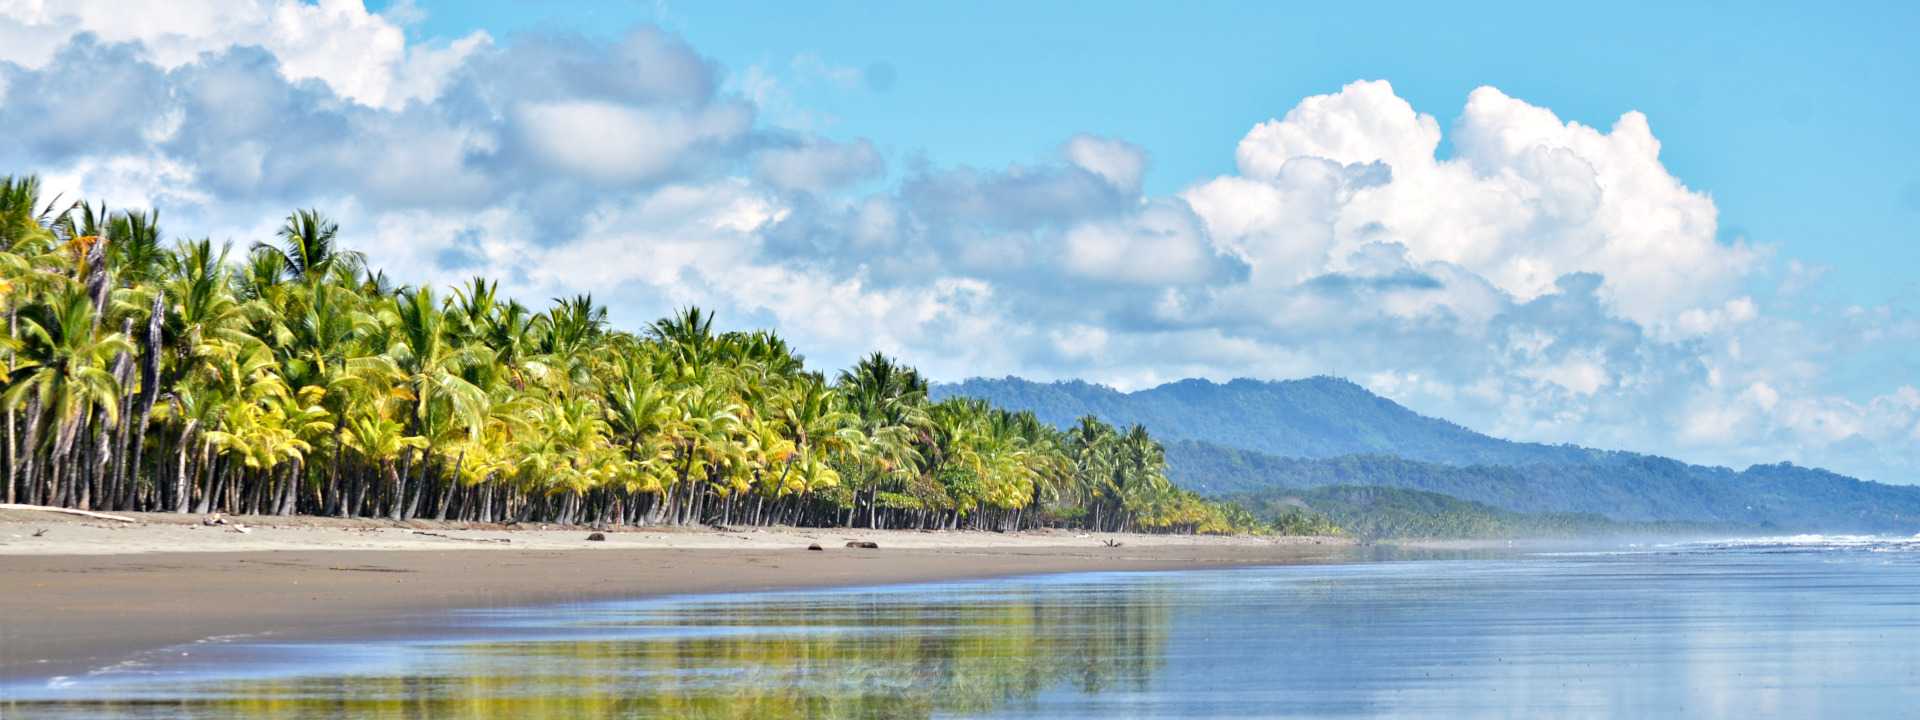 Discover Pristine Beaches in Costa Rica